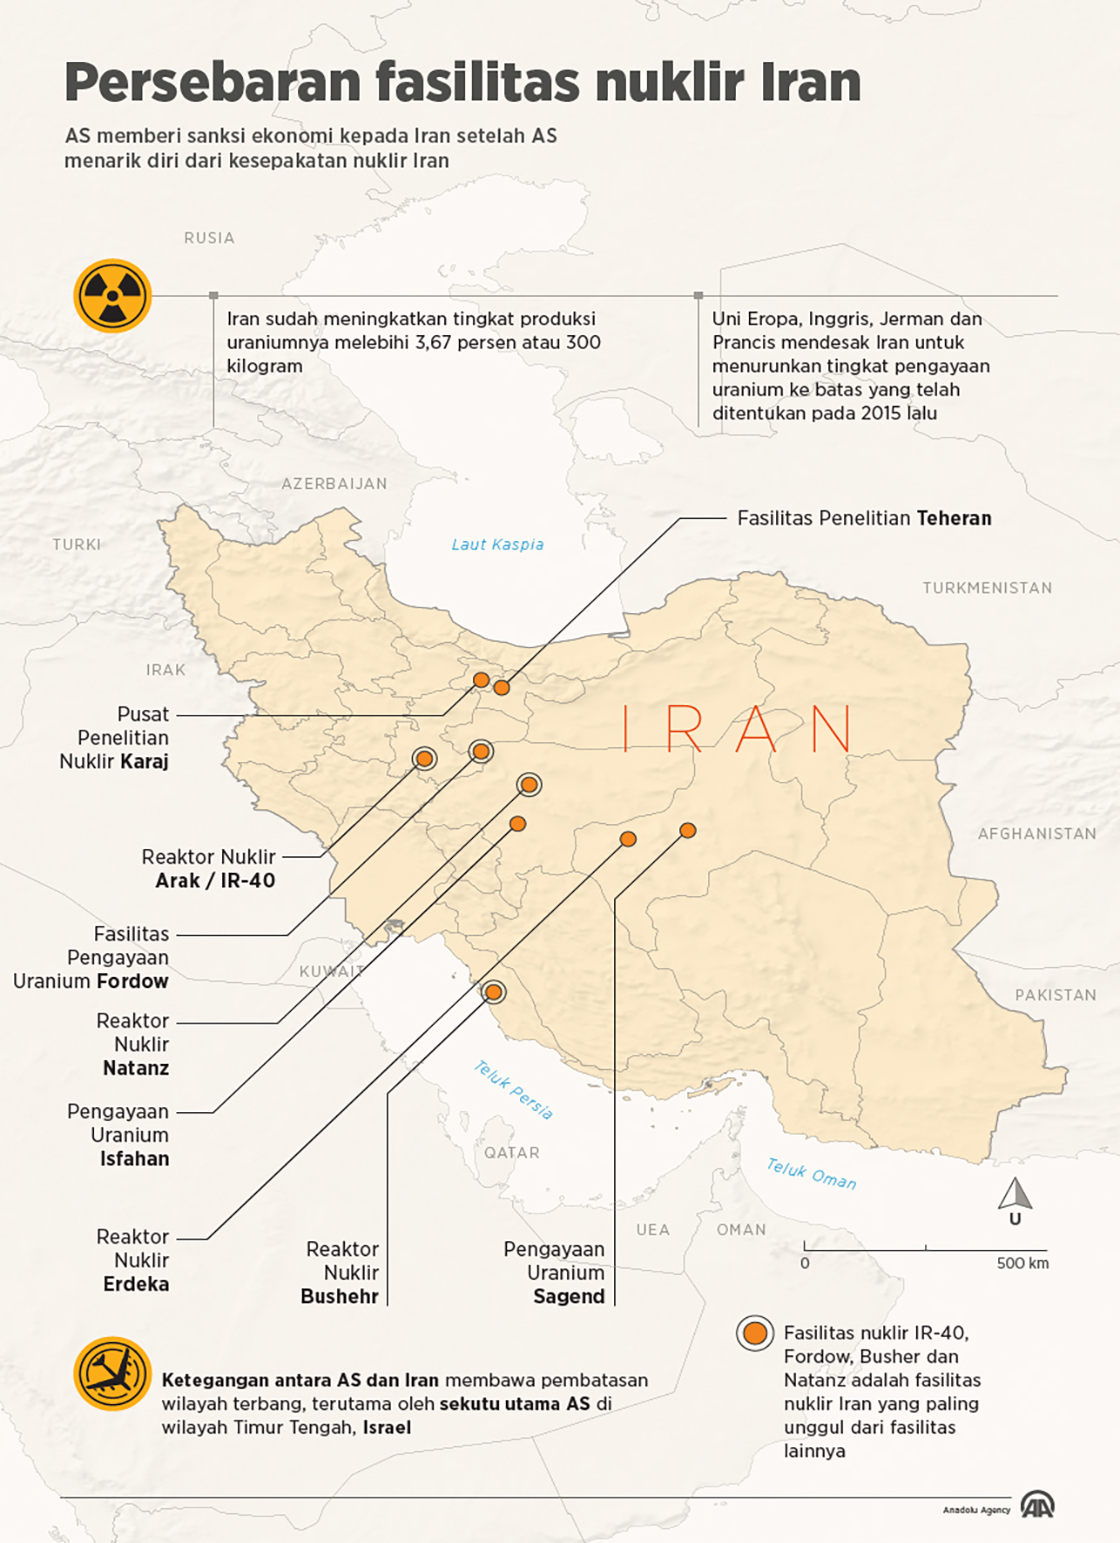 Persebaran fasilitas nuklir Iran 